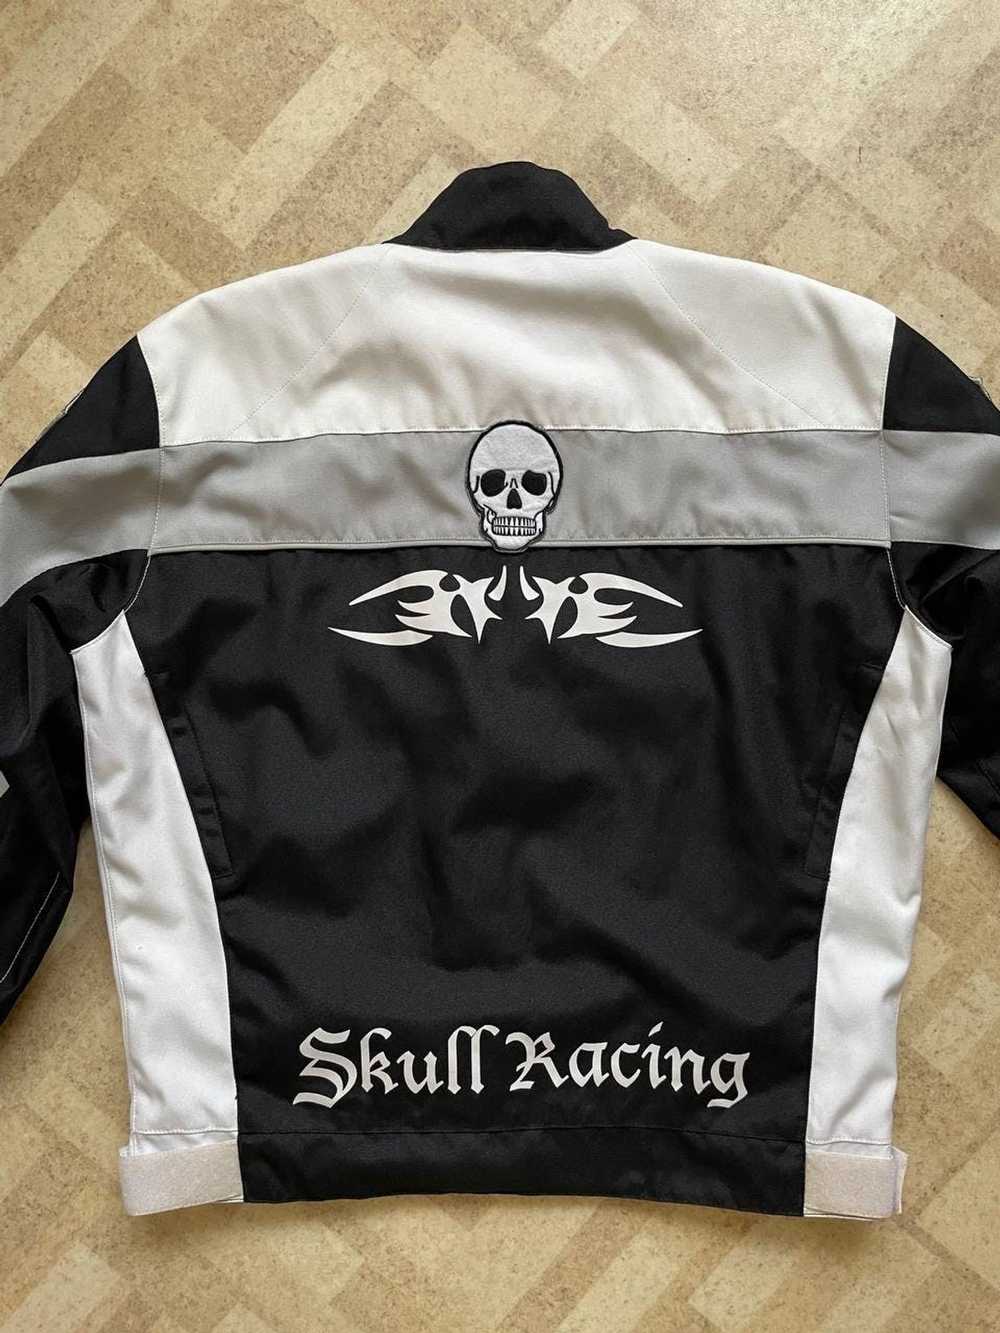 Racing × Skulls × Vintage Vintage Moto Skull Raci… - image 2